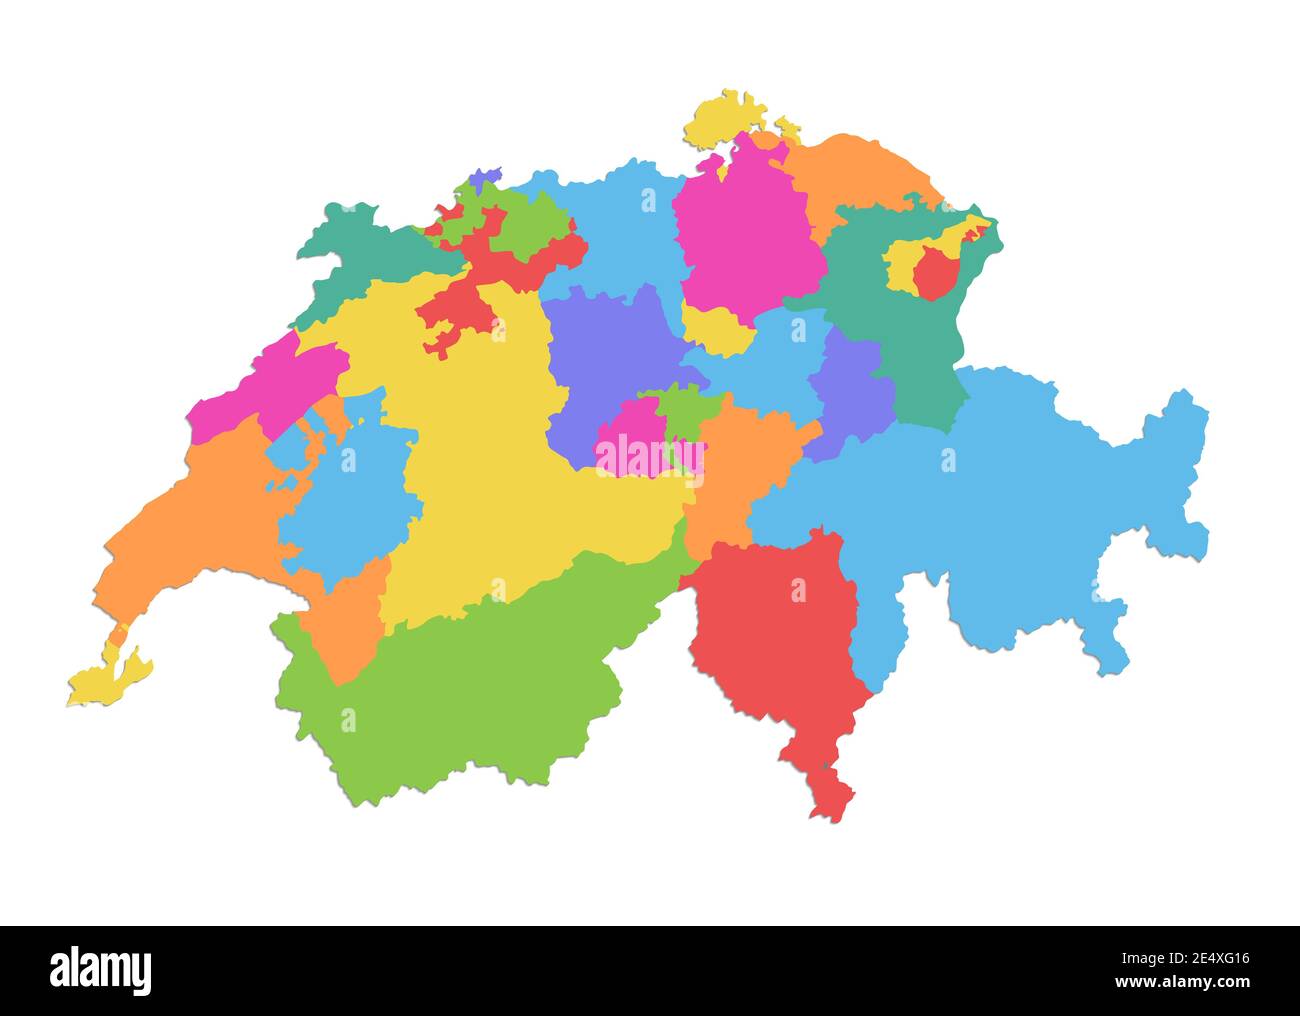 Carte suisse, division administrative, régions individuelles séparées, carte couleur isolée sur fond blanc vierge Banque D'Images